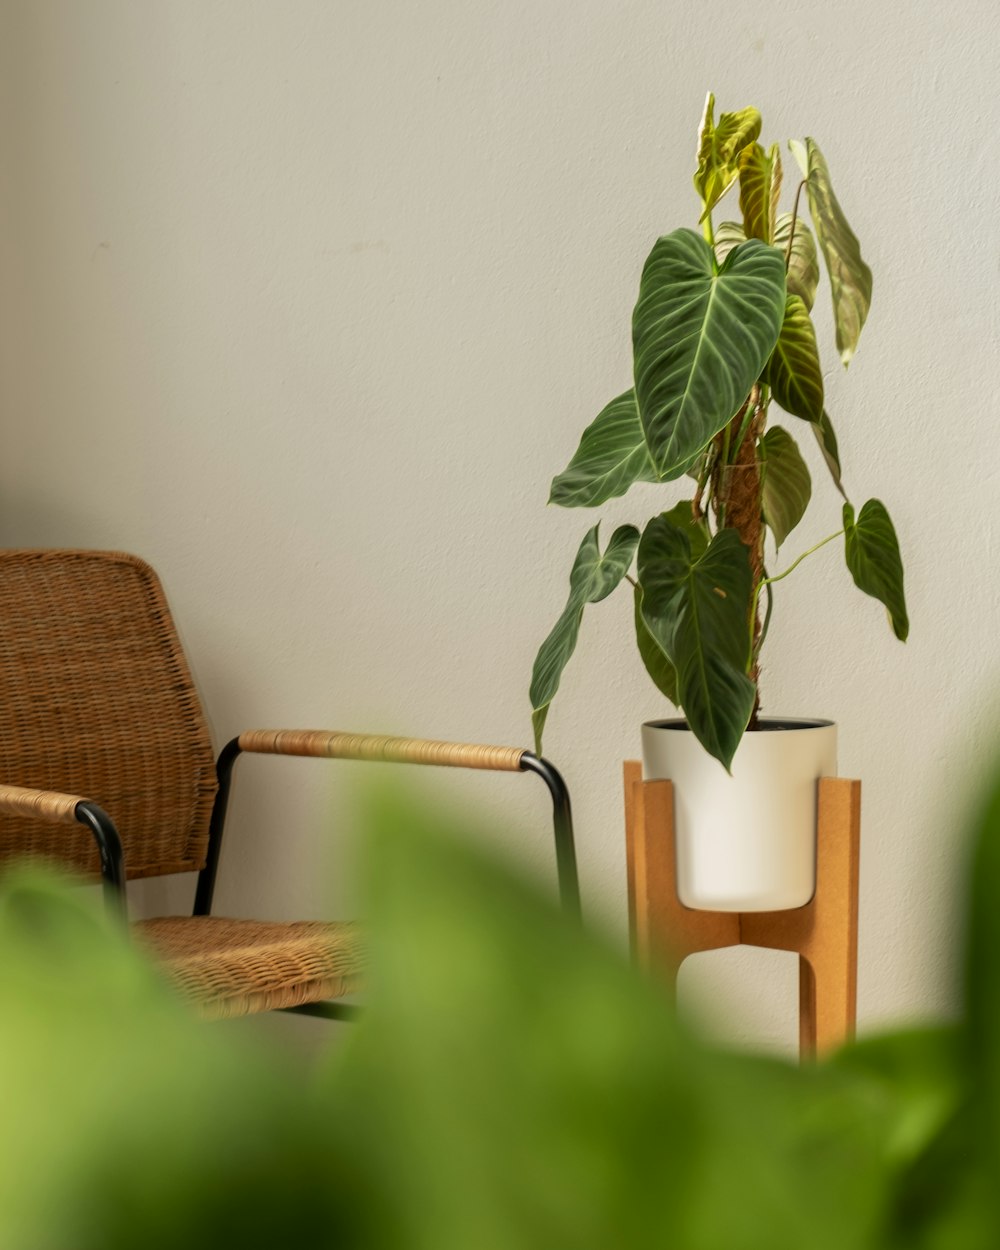 テーブルの上の椅子と鉢植えの植物